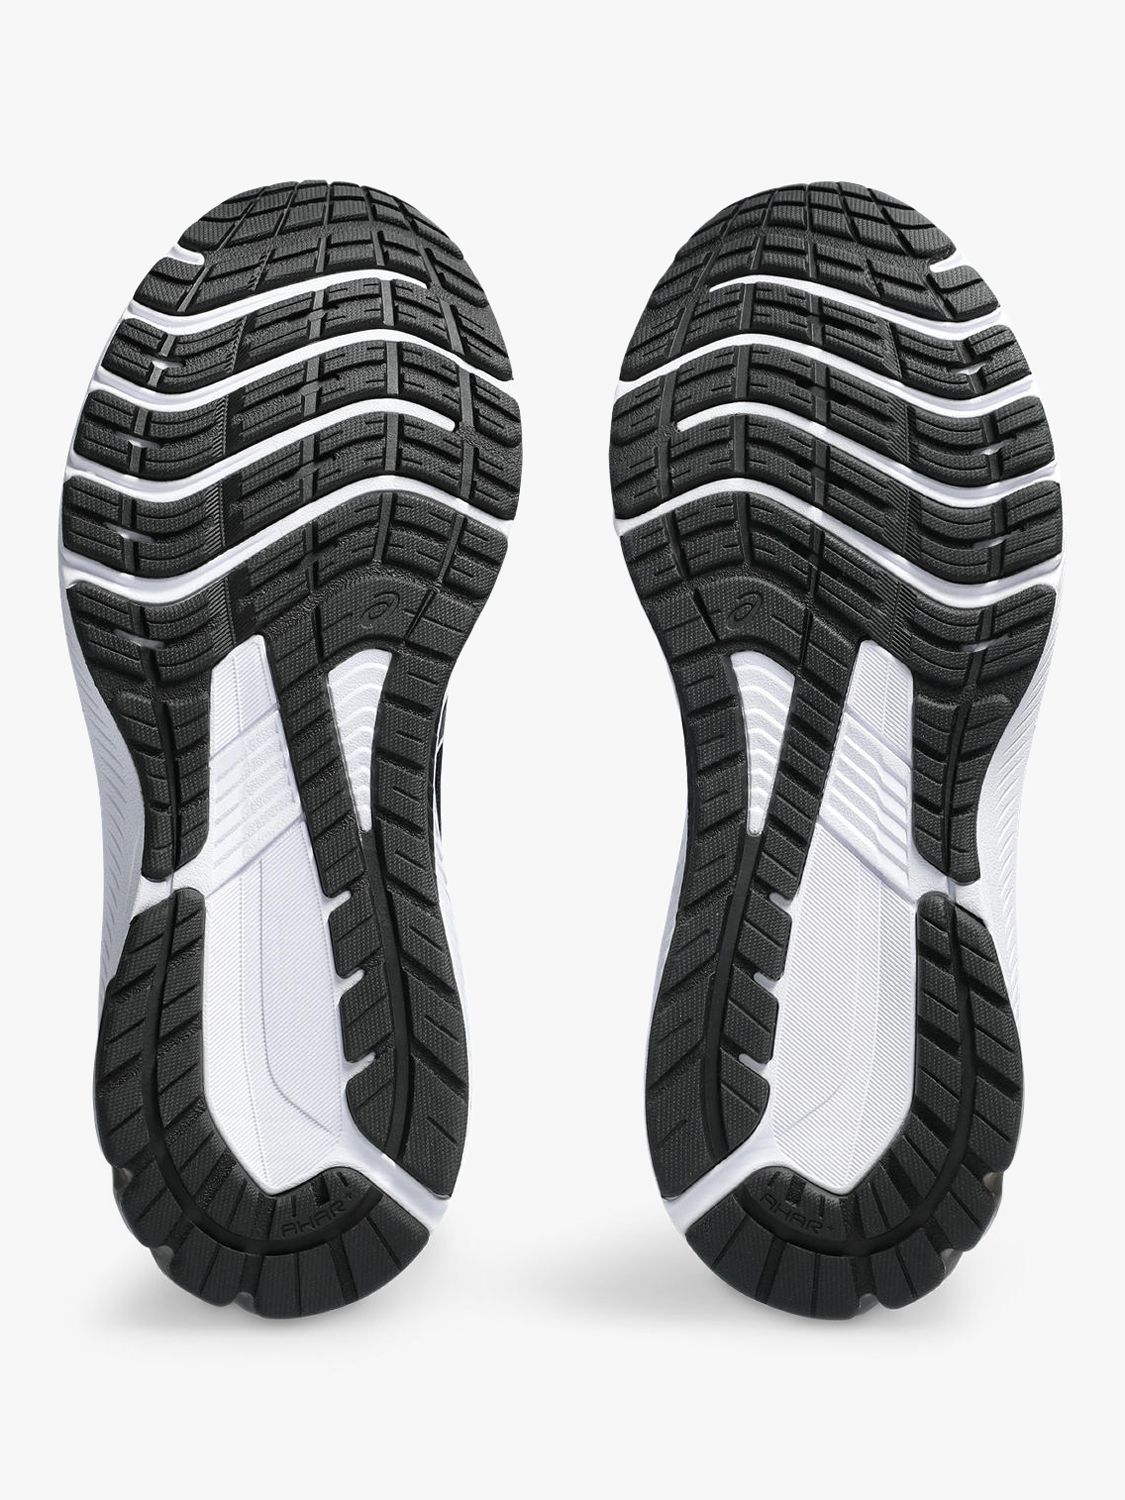 ASICS GT-1000 12 Women's Running Shoes, Black/White at John Lewis ...